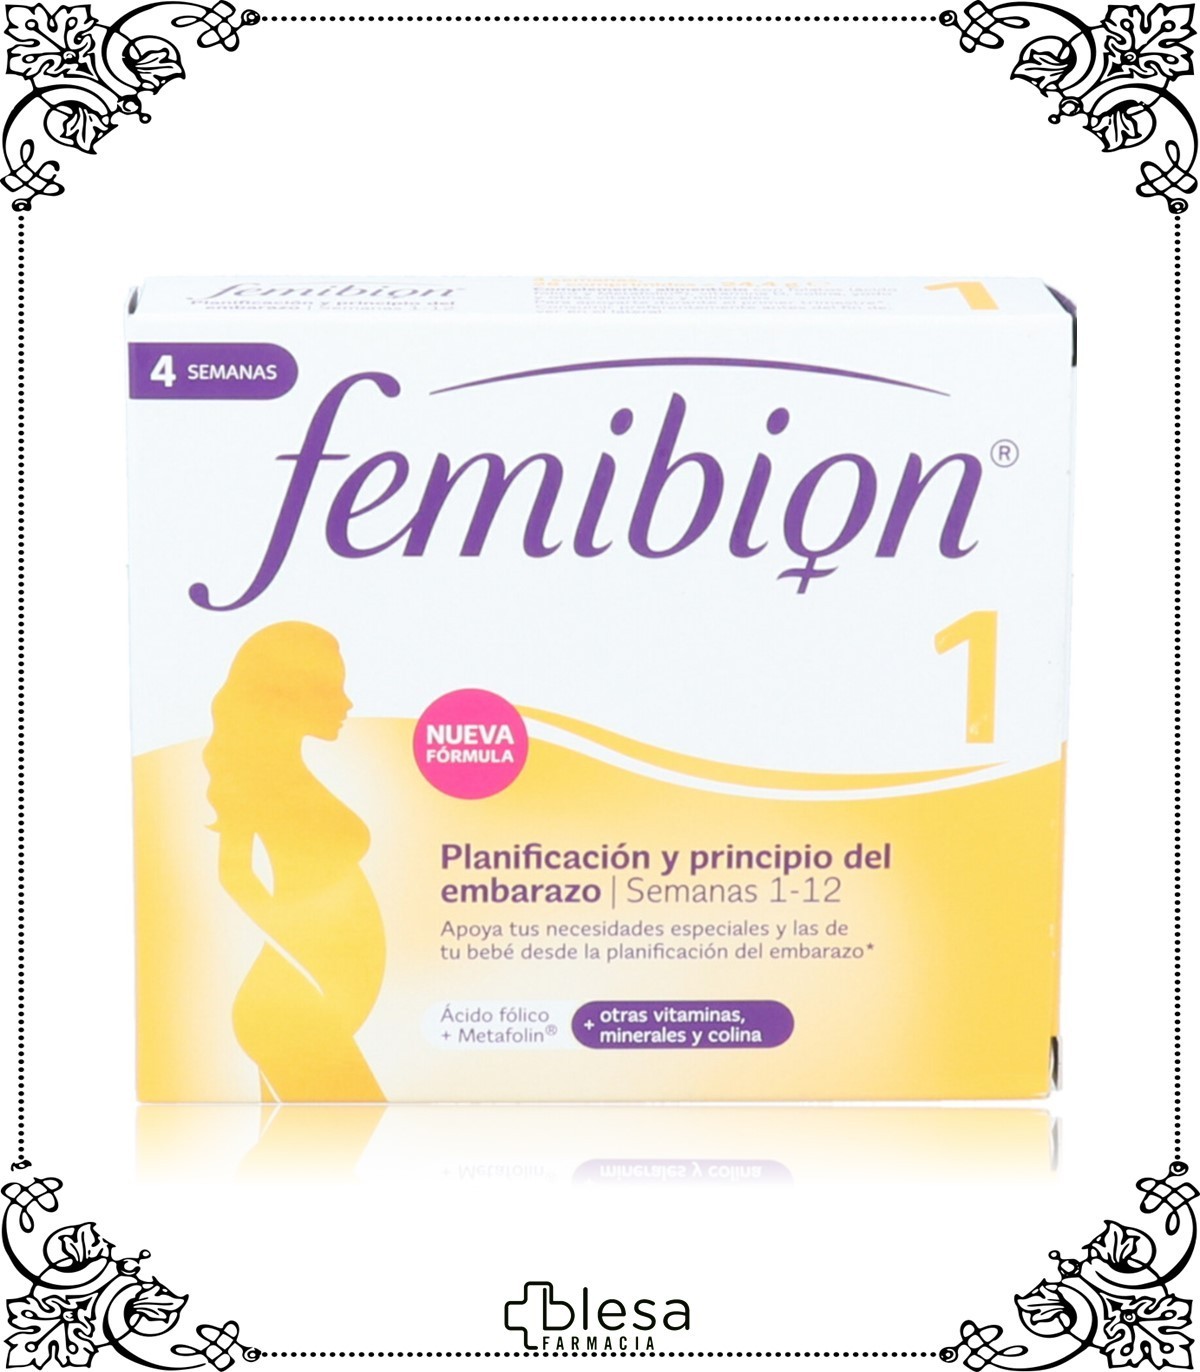 Comprar Femibion 1 28 comprimidos